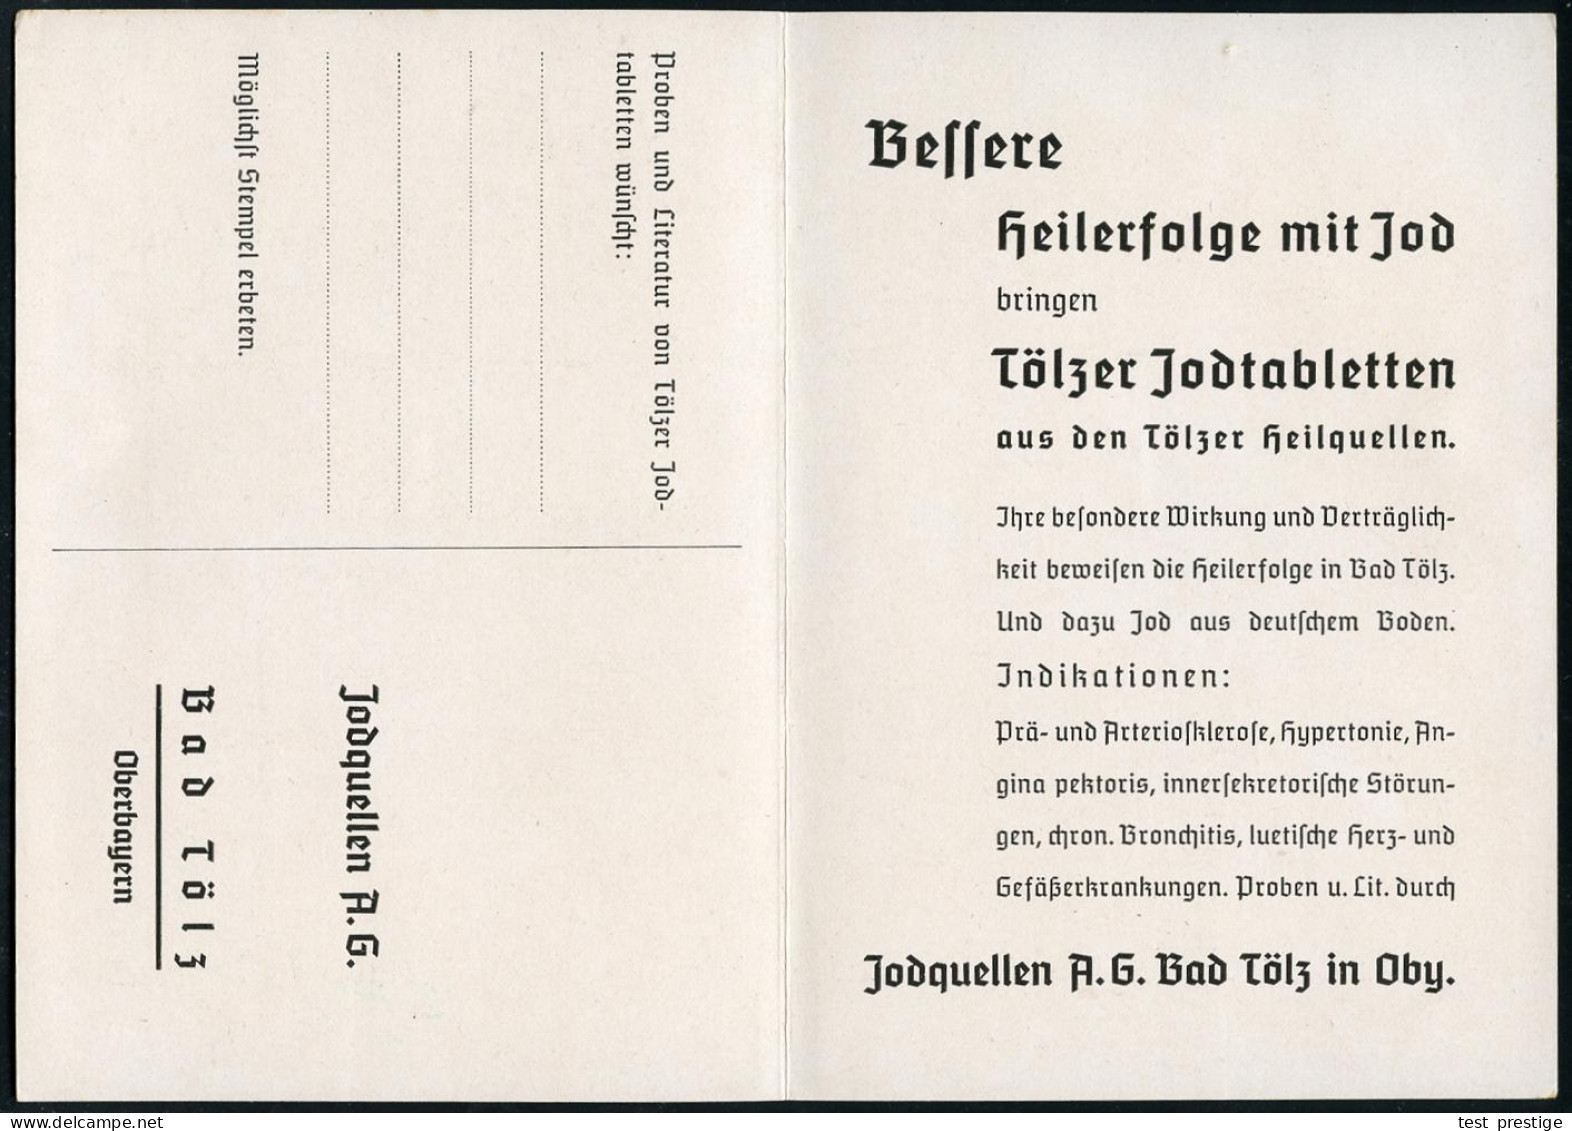 BAD TÖLZ/ *1*/ GEGEN/ ADERVER/ KALKUNG/ UND/ BLUTHOCHDRUCK../ KRANKENHEILER JODQUELLEN AG/ JOD-BAD TÖLZ.. 1936 (13.1.) S - Pharmacy